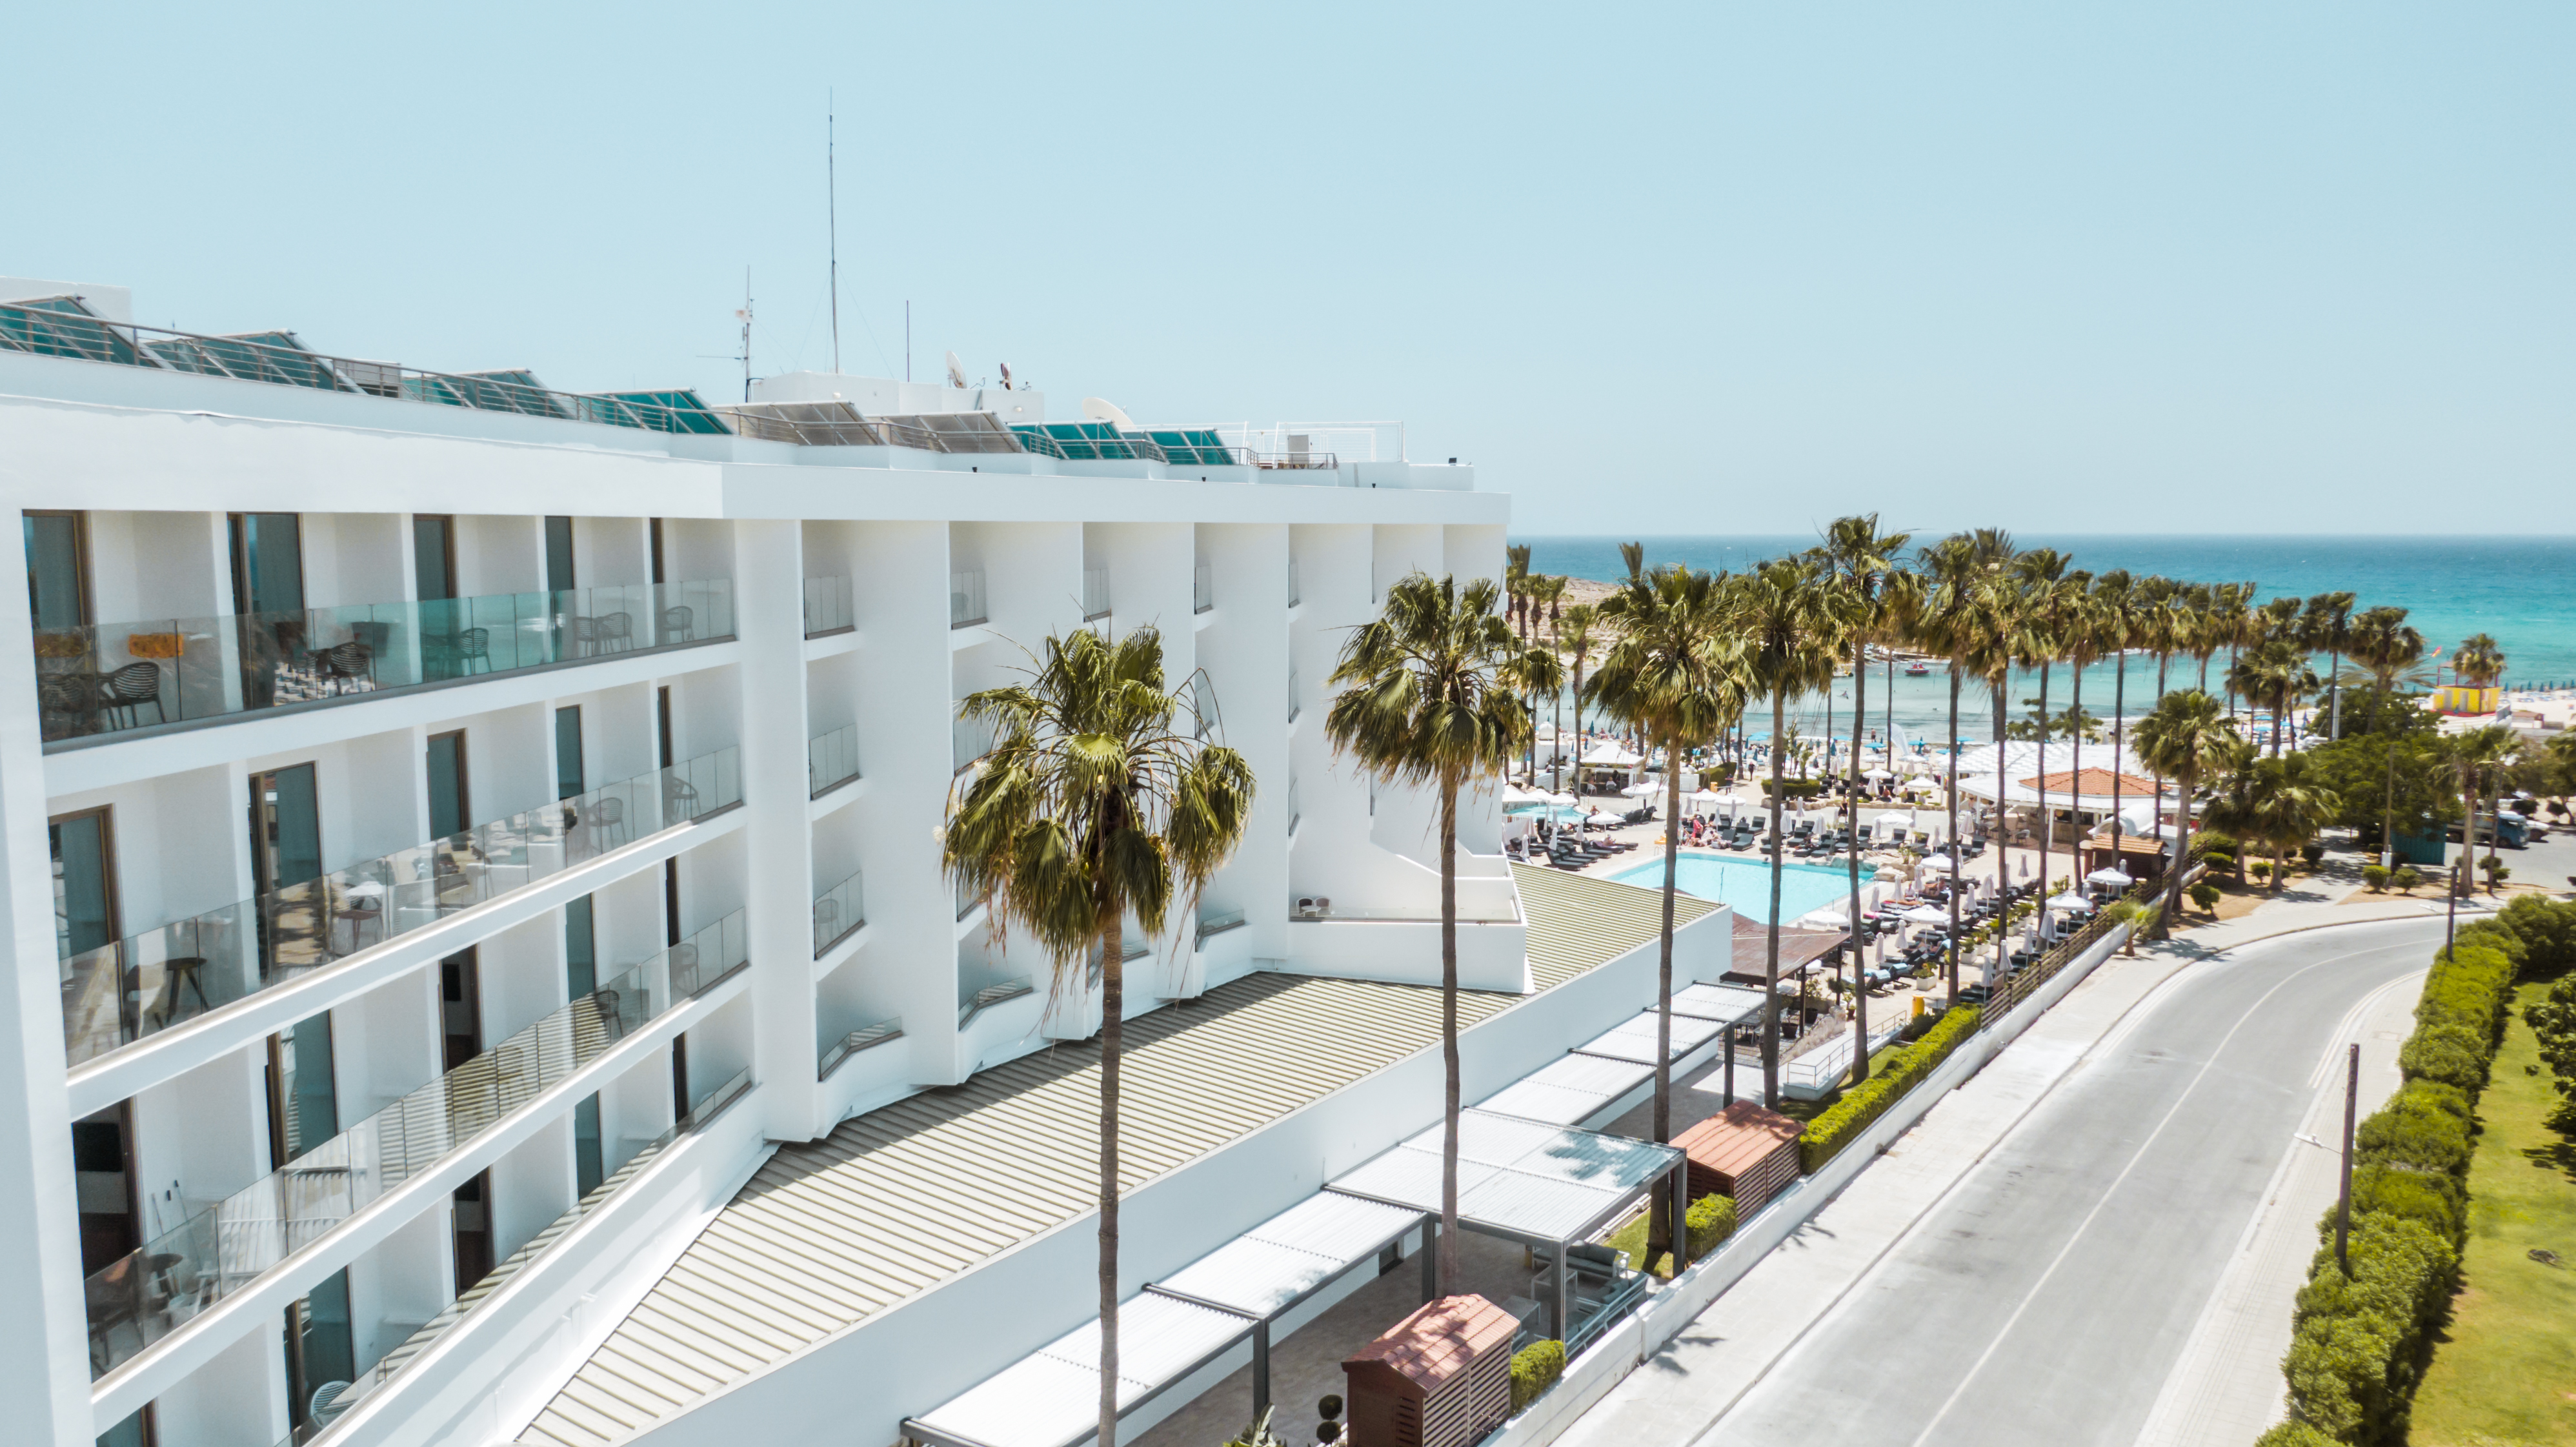 Pavlo Napa Beach Hotel image